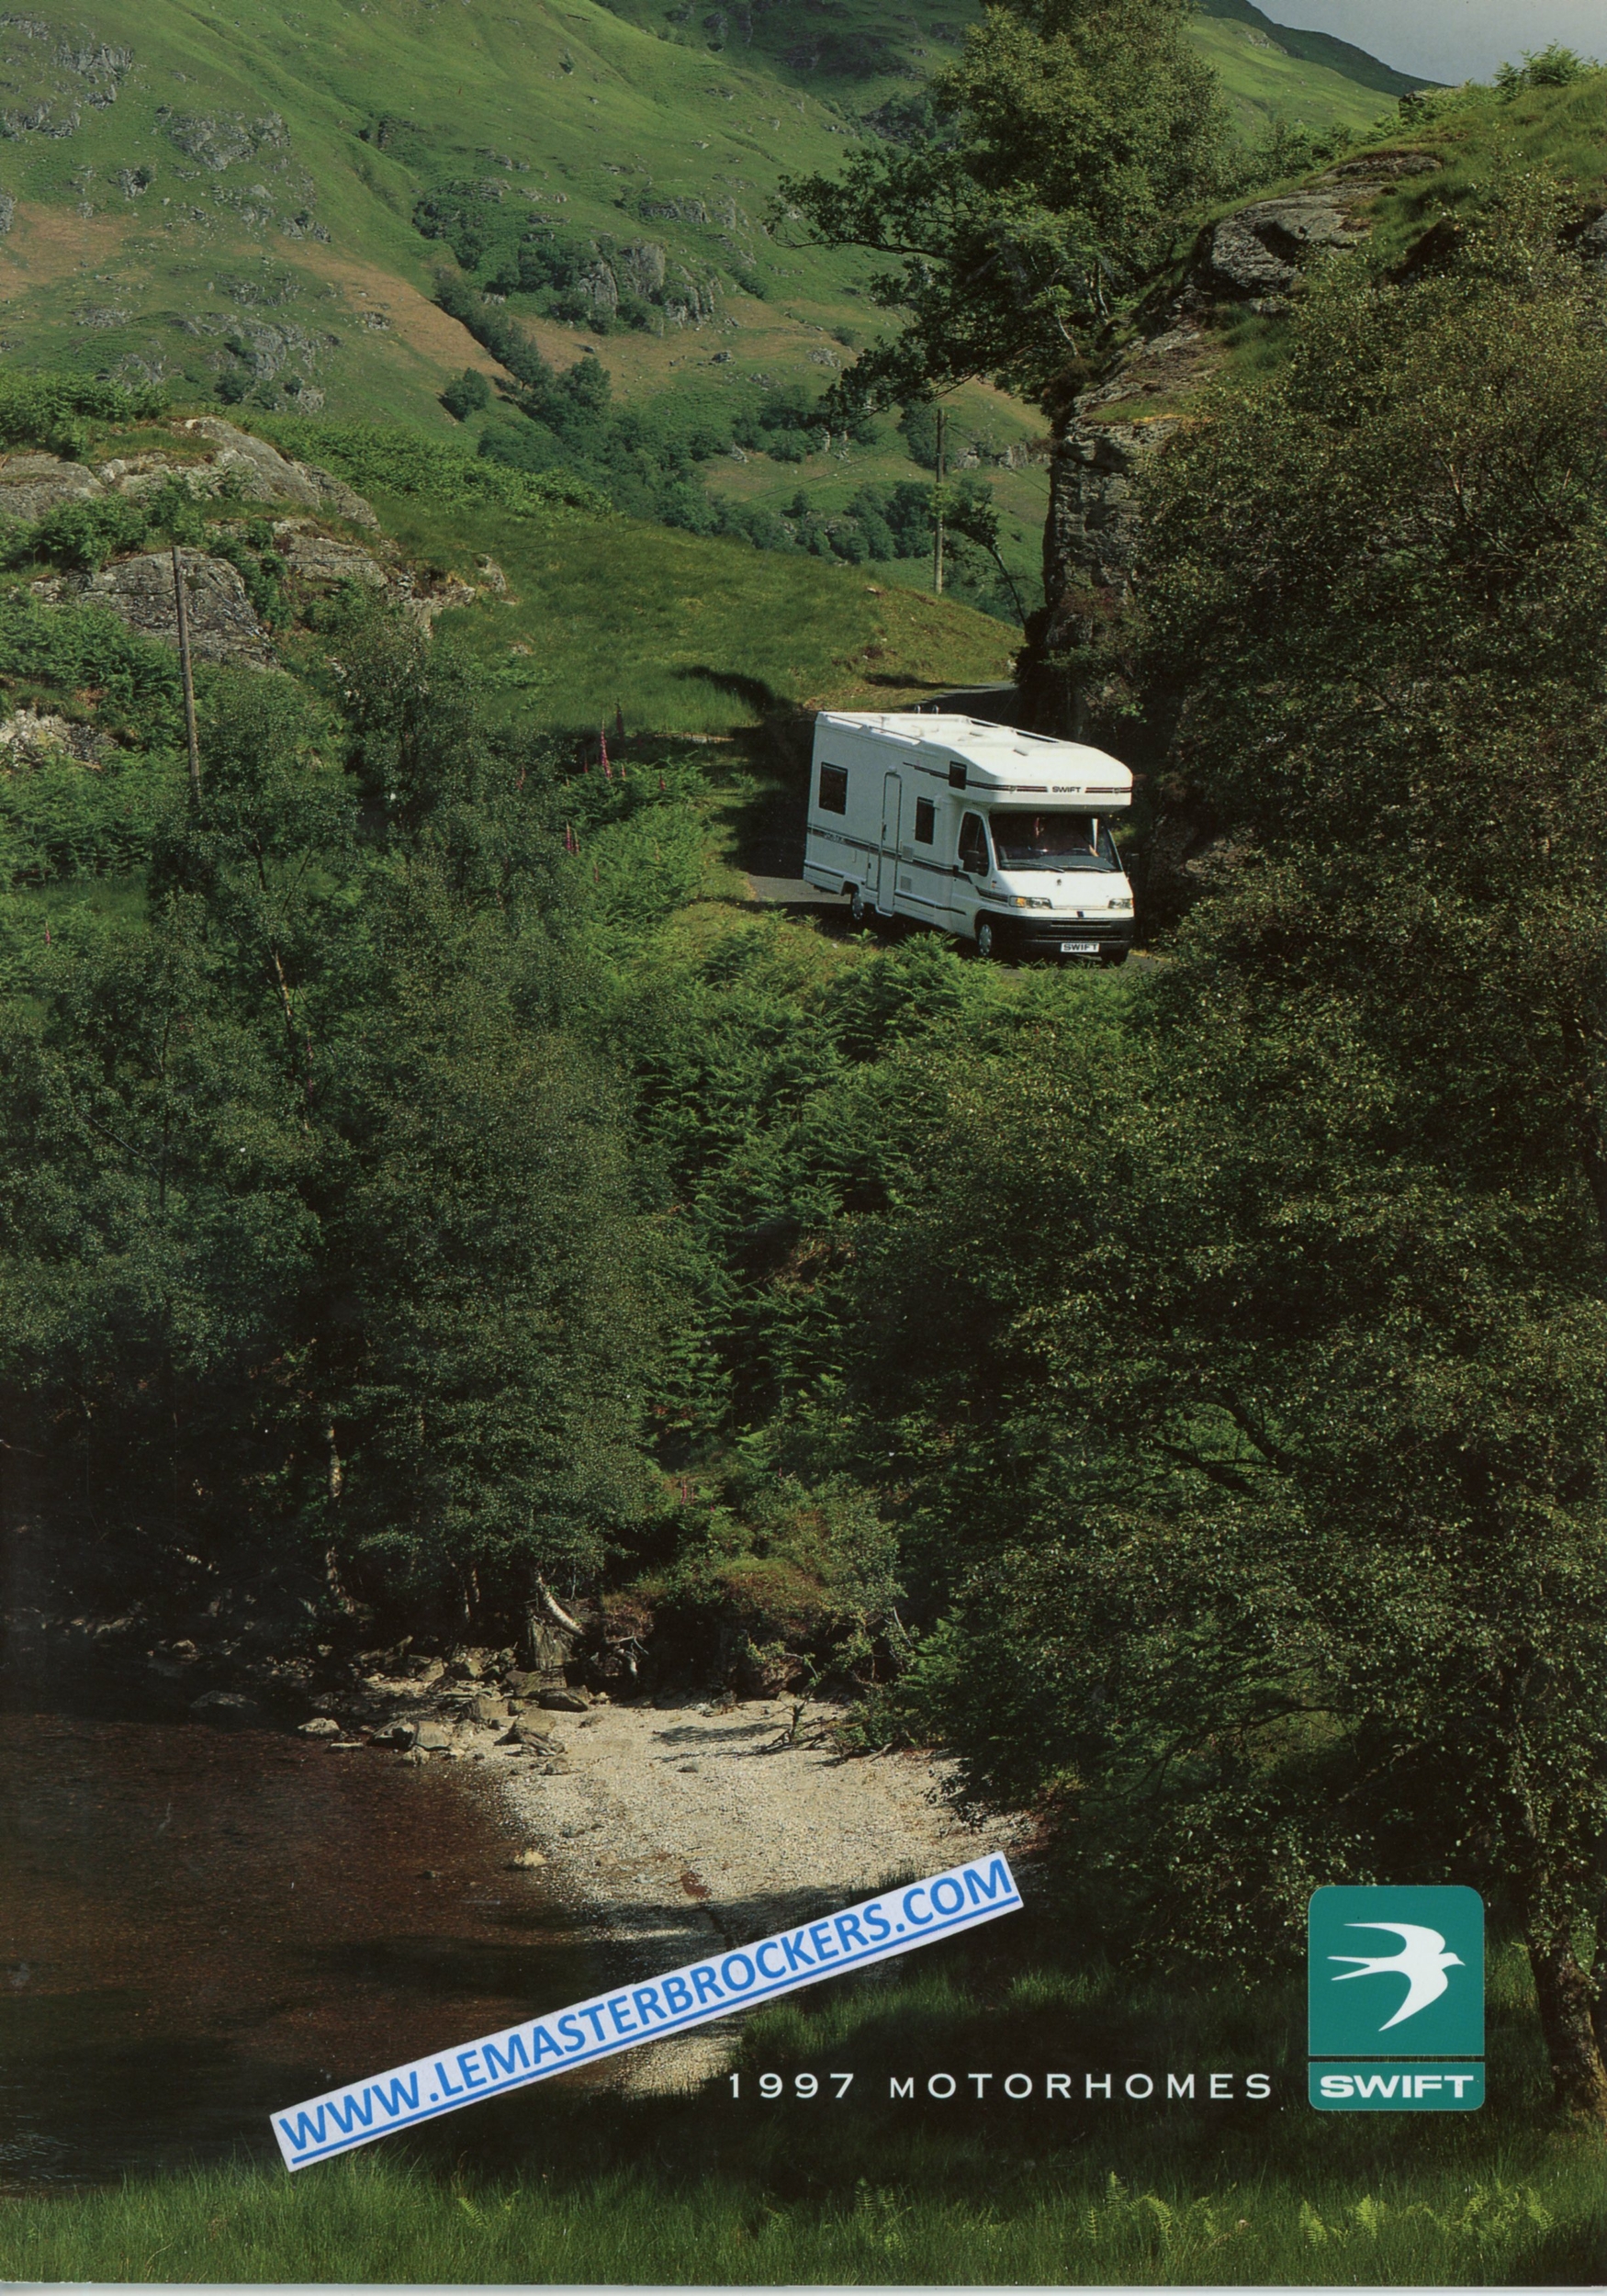 BROCHURE-camping-car-swift-1997-motorhomes-vintage-LEMASTERBROCKERS